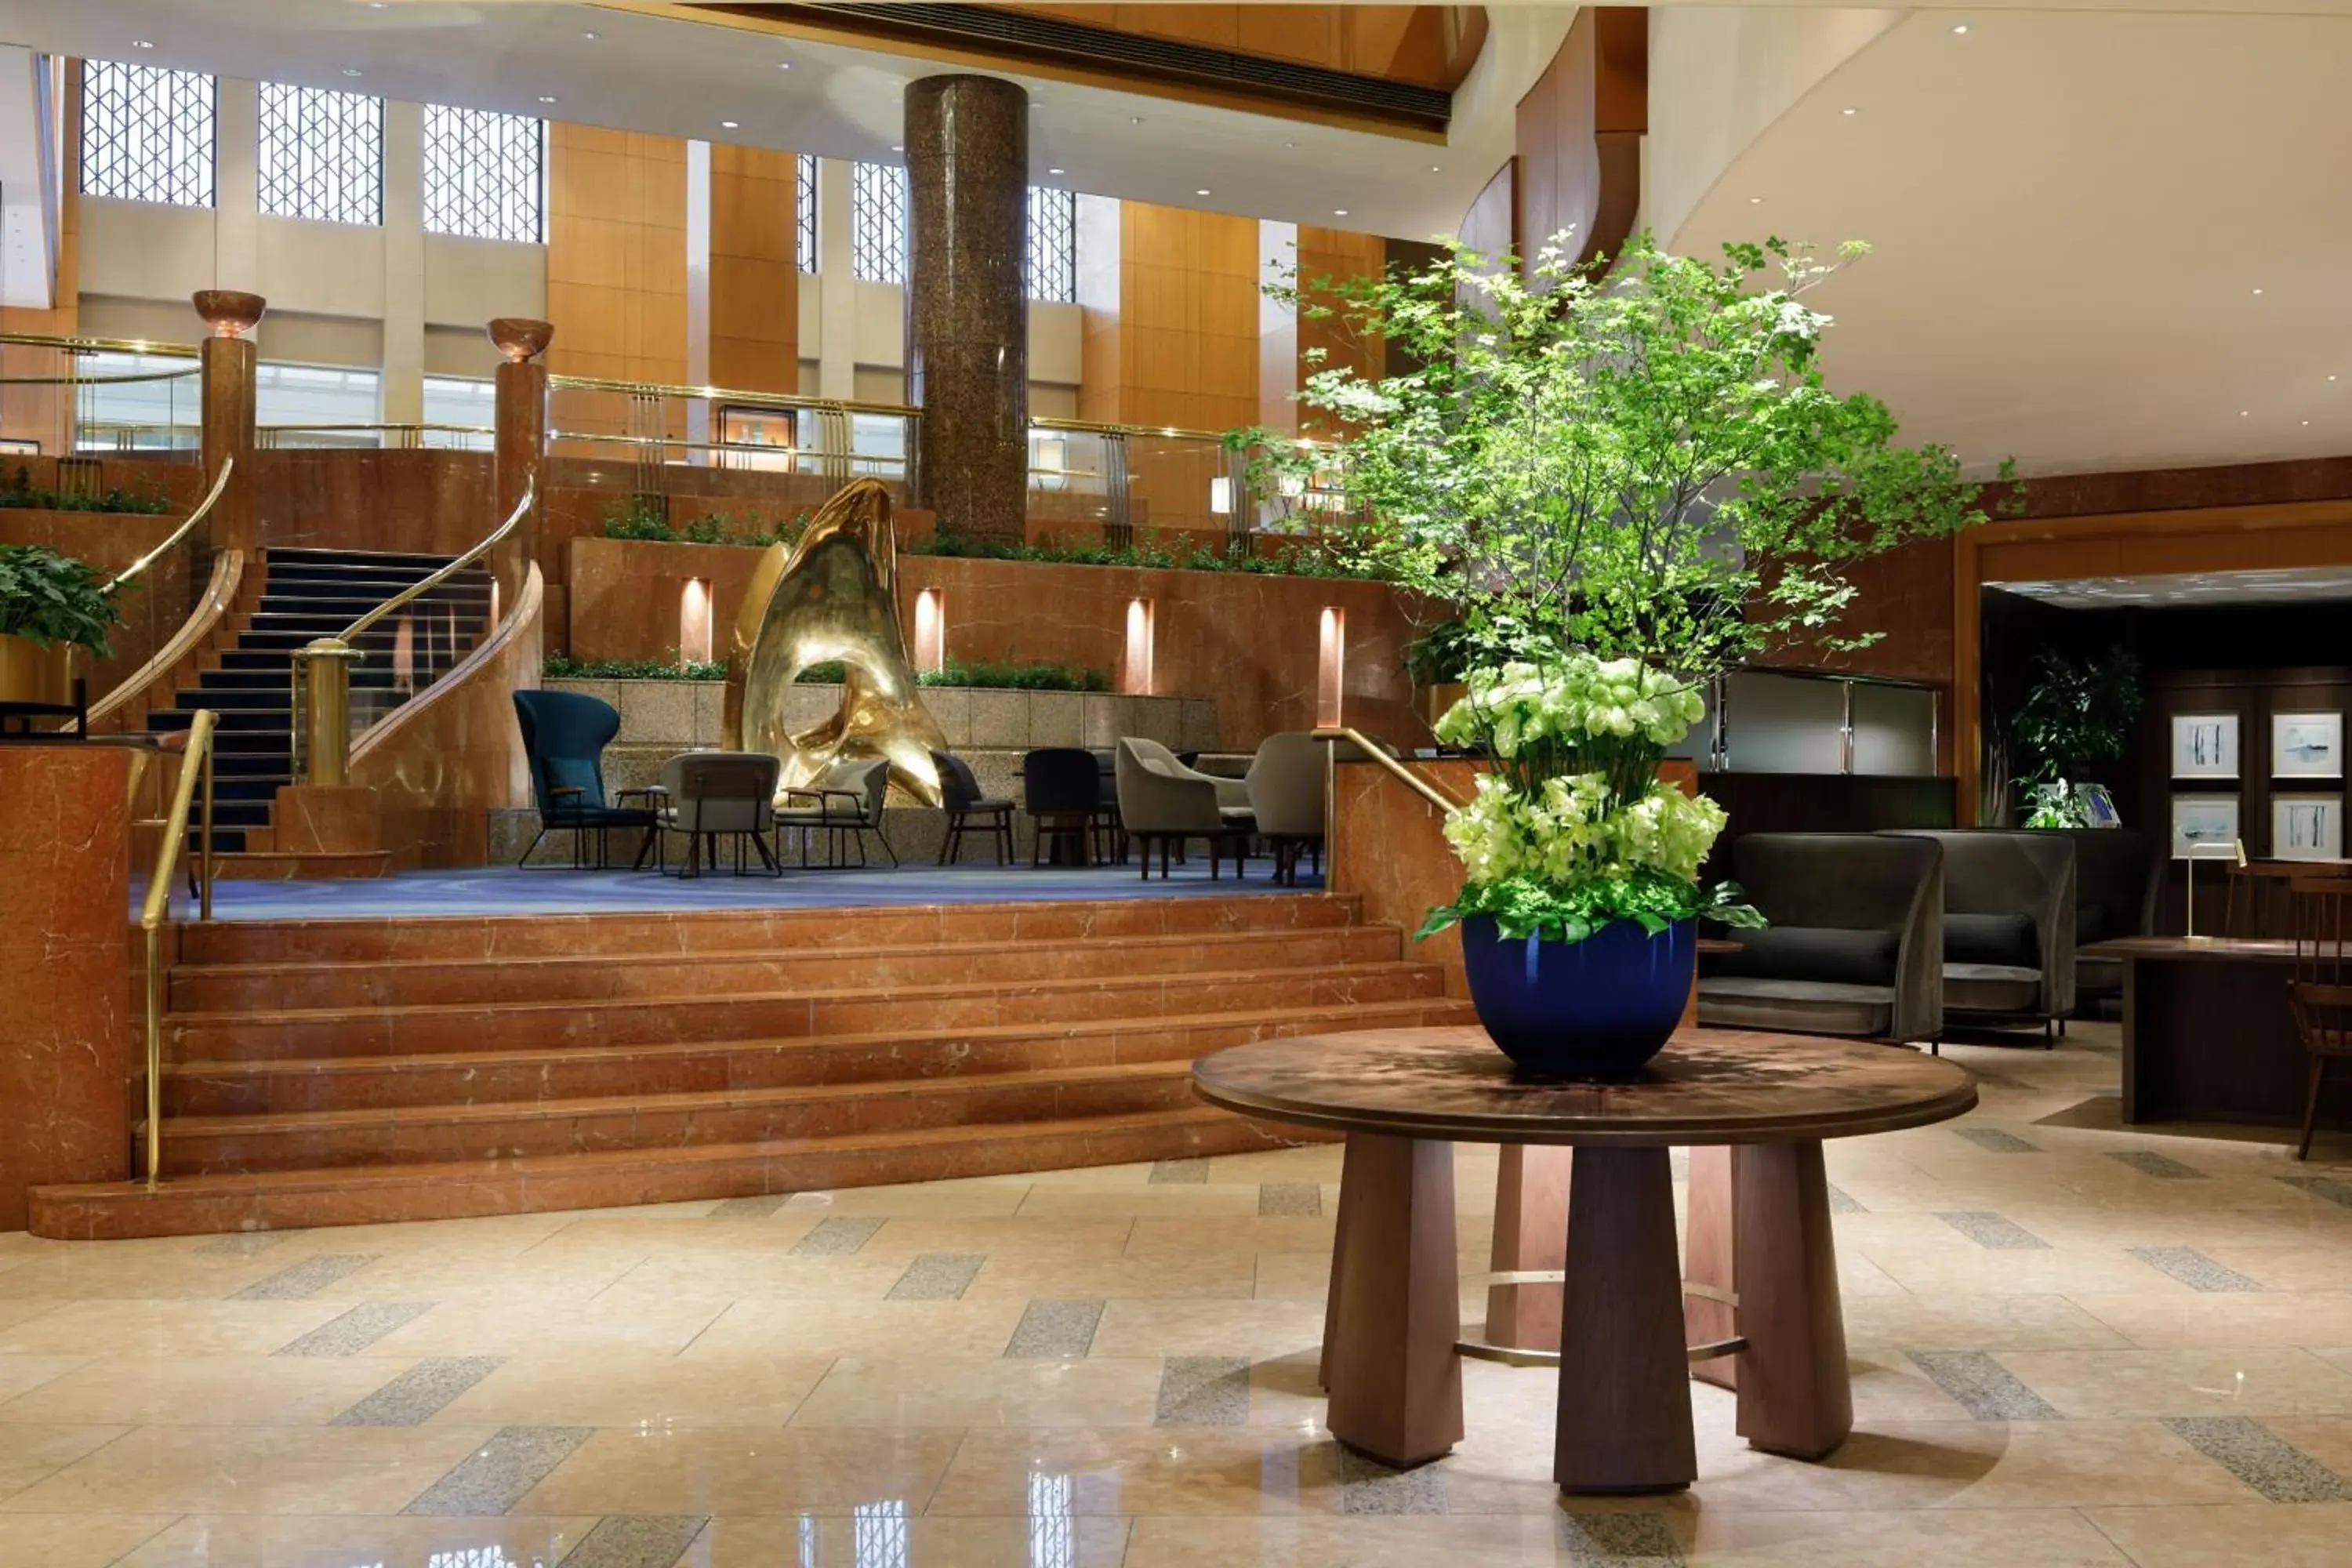 Lobby or reception in Yokohama Bay Sheraton Hotel and Towers